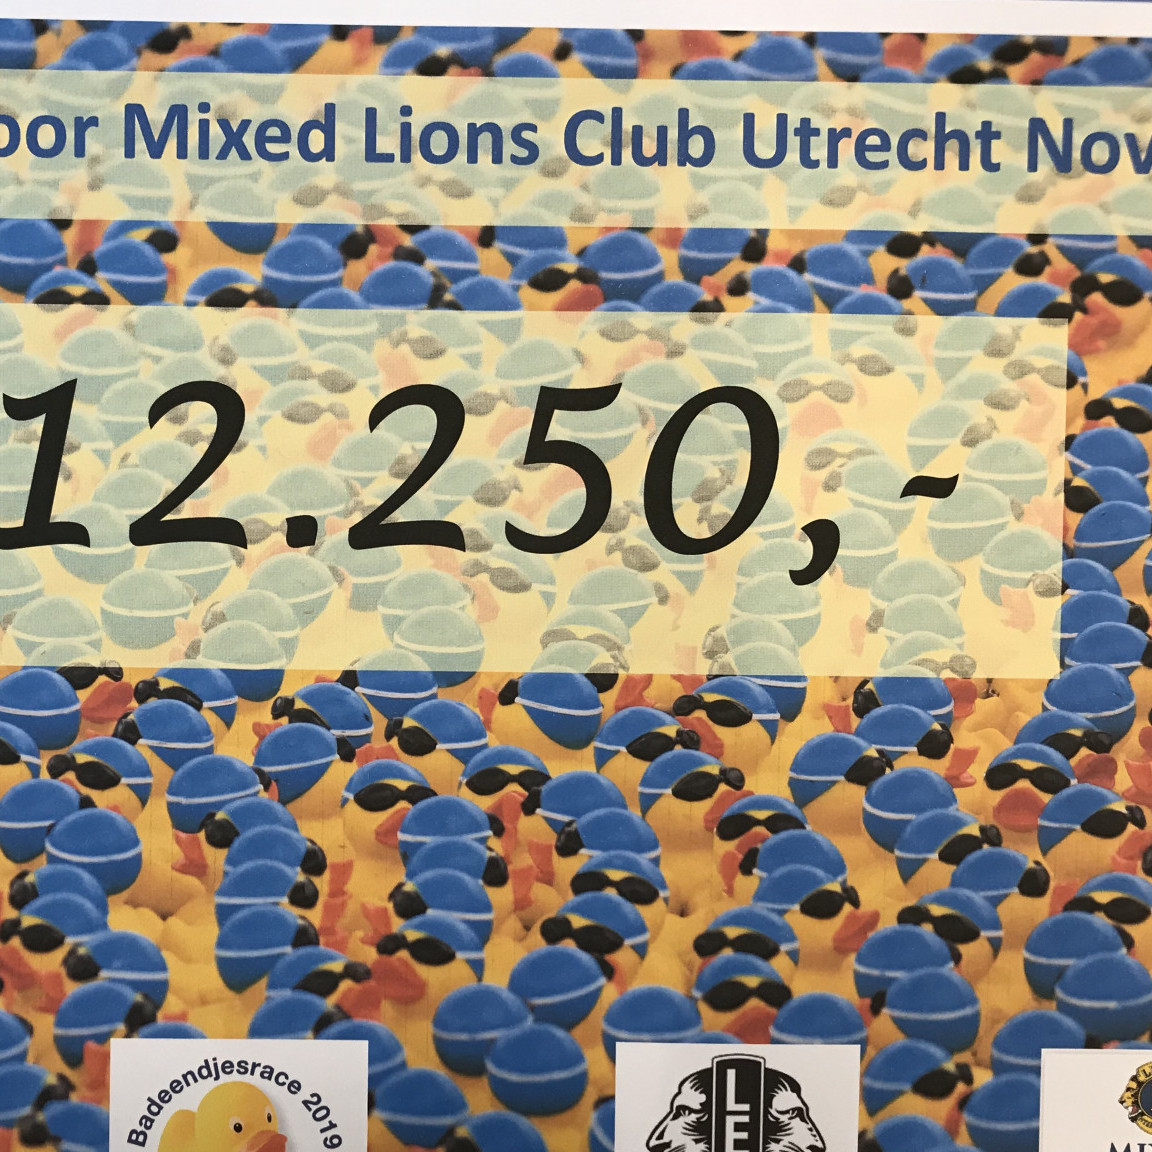 Mixed Lions Club Utrecht Novum houdt badeendjesrace